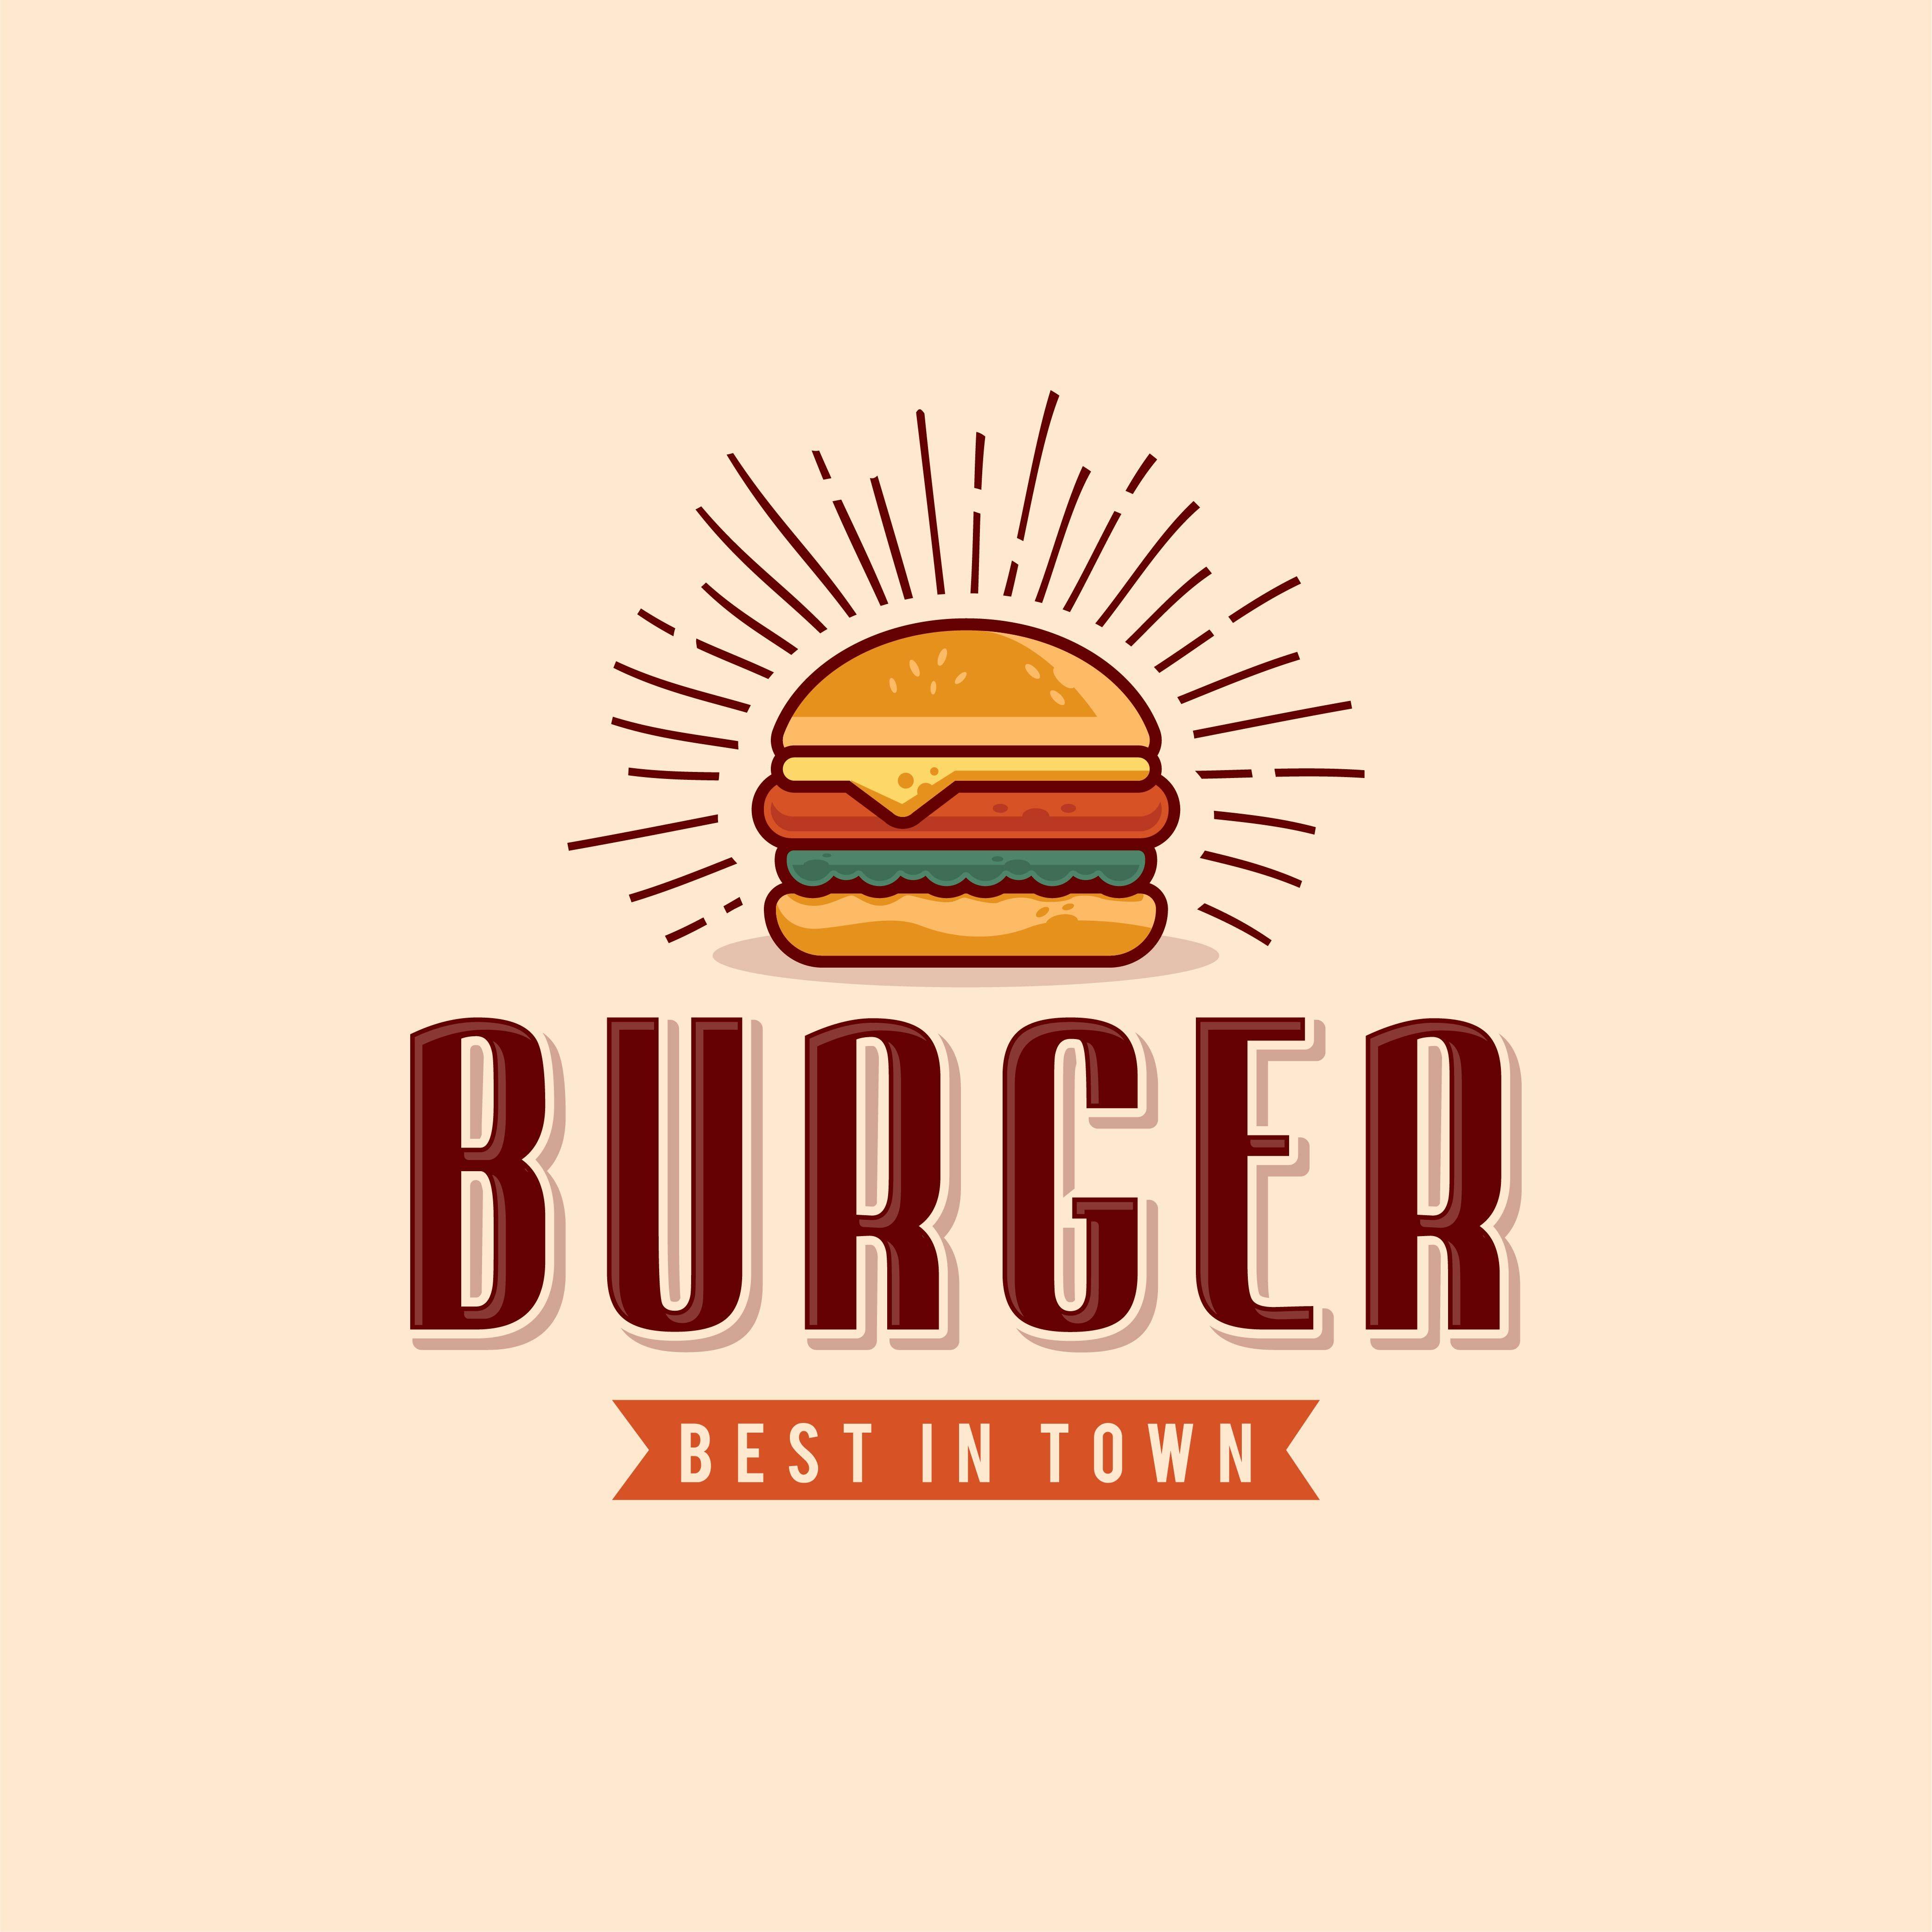 Vintage Fast Food Restaurant Logo - Stock burger, logo. #logo #burger #hamburger #restaurant #food ...